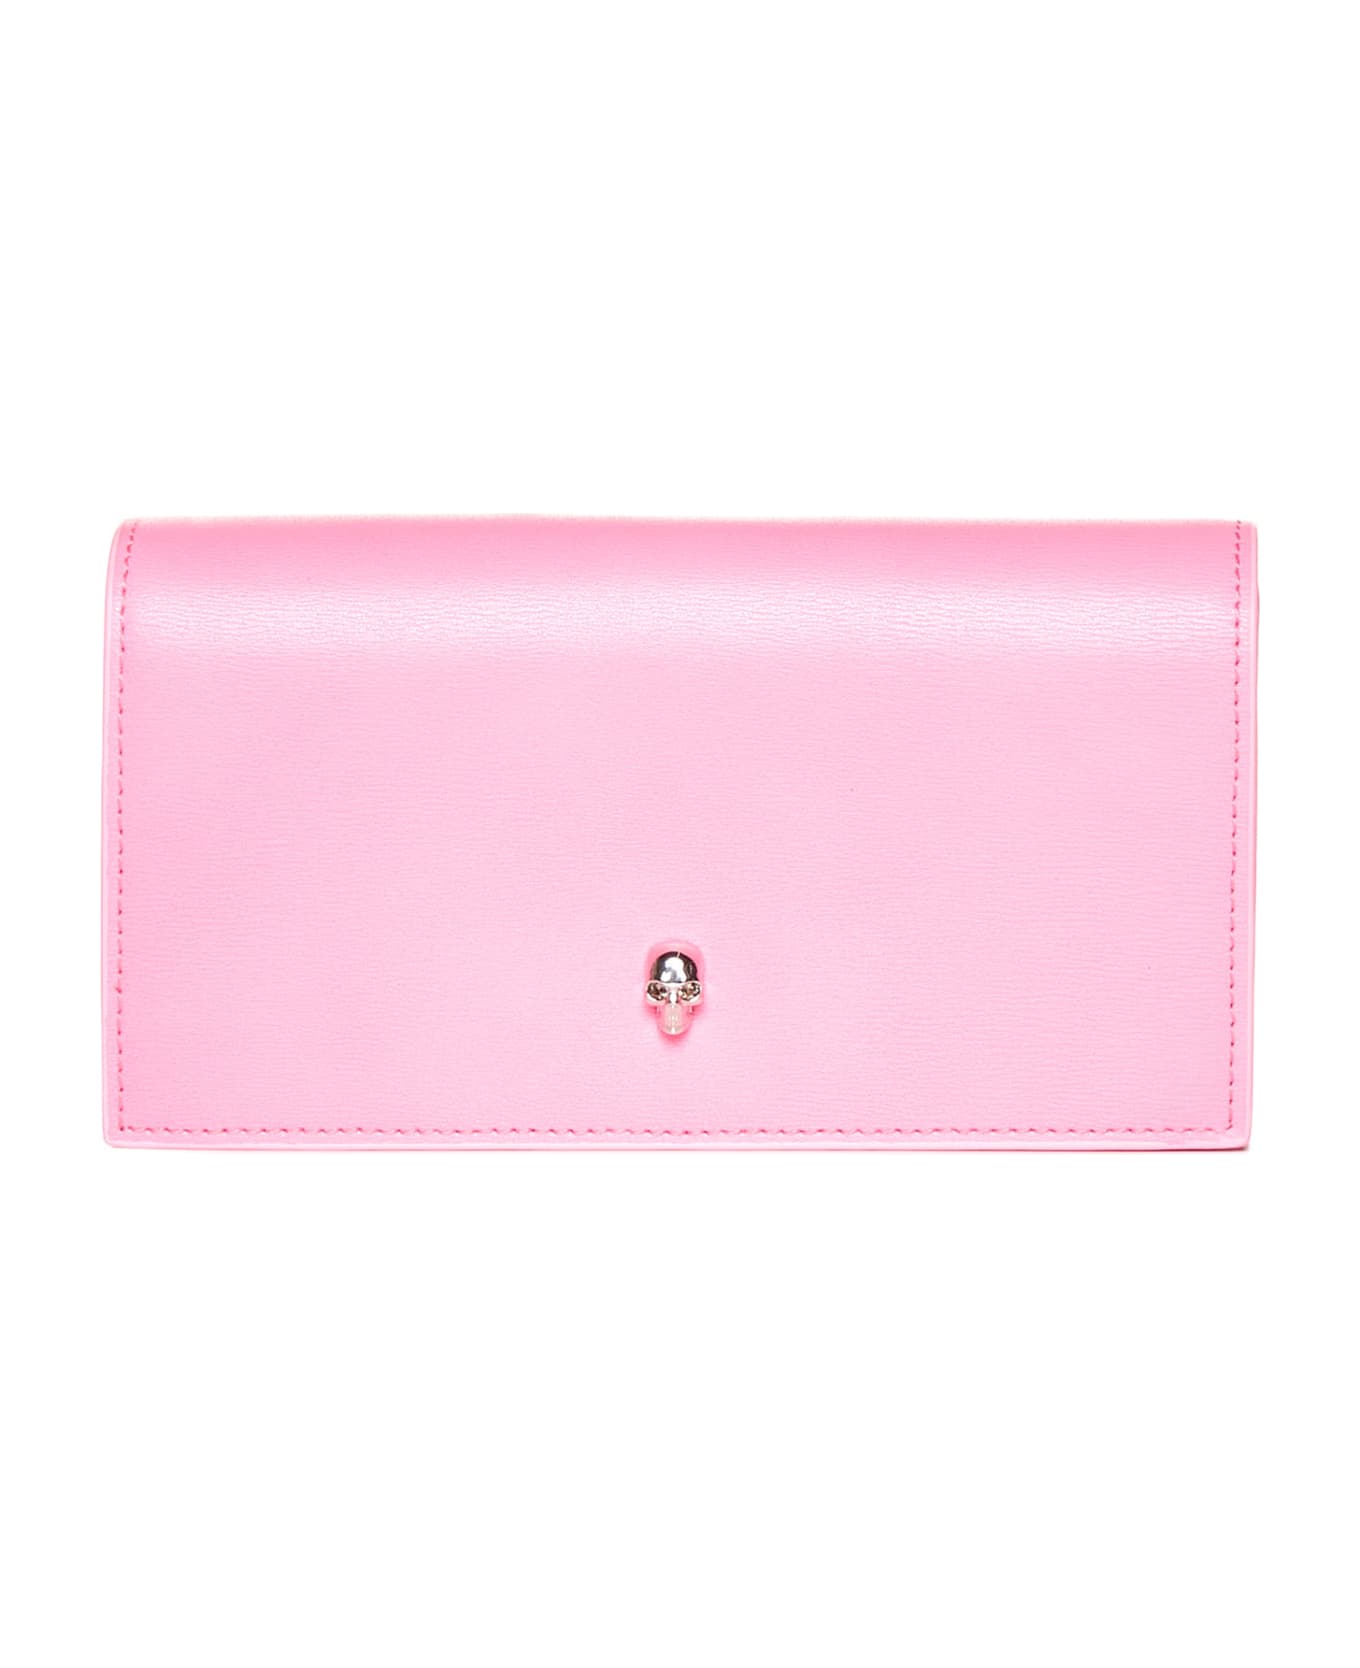 Alexander McQueen Leather Wallet - Fluo pink